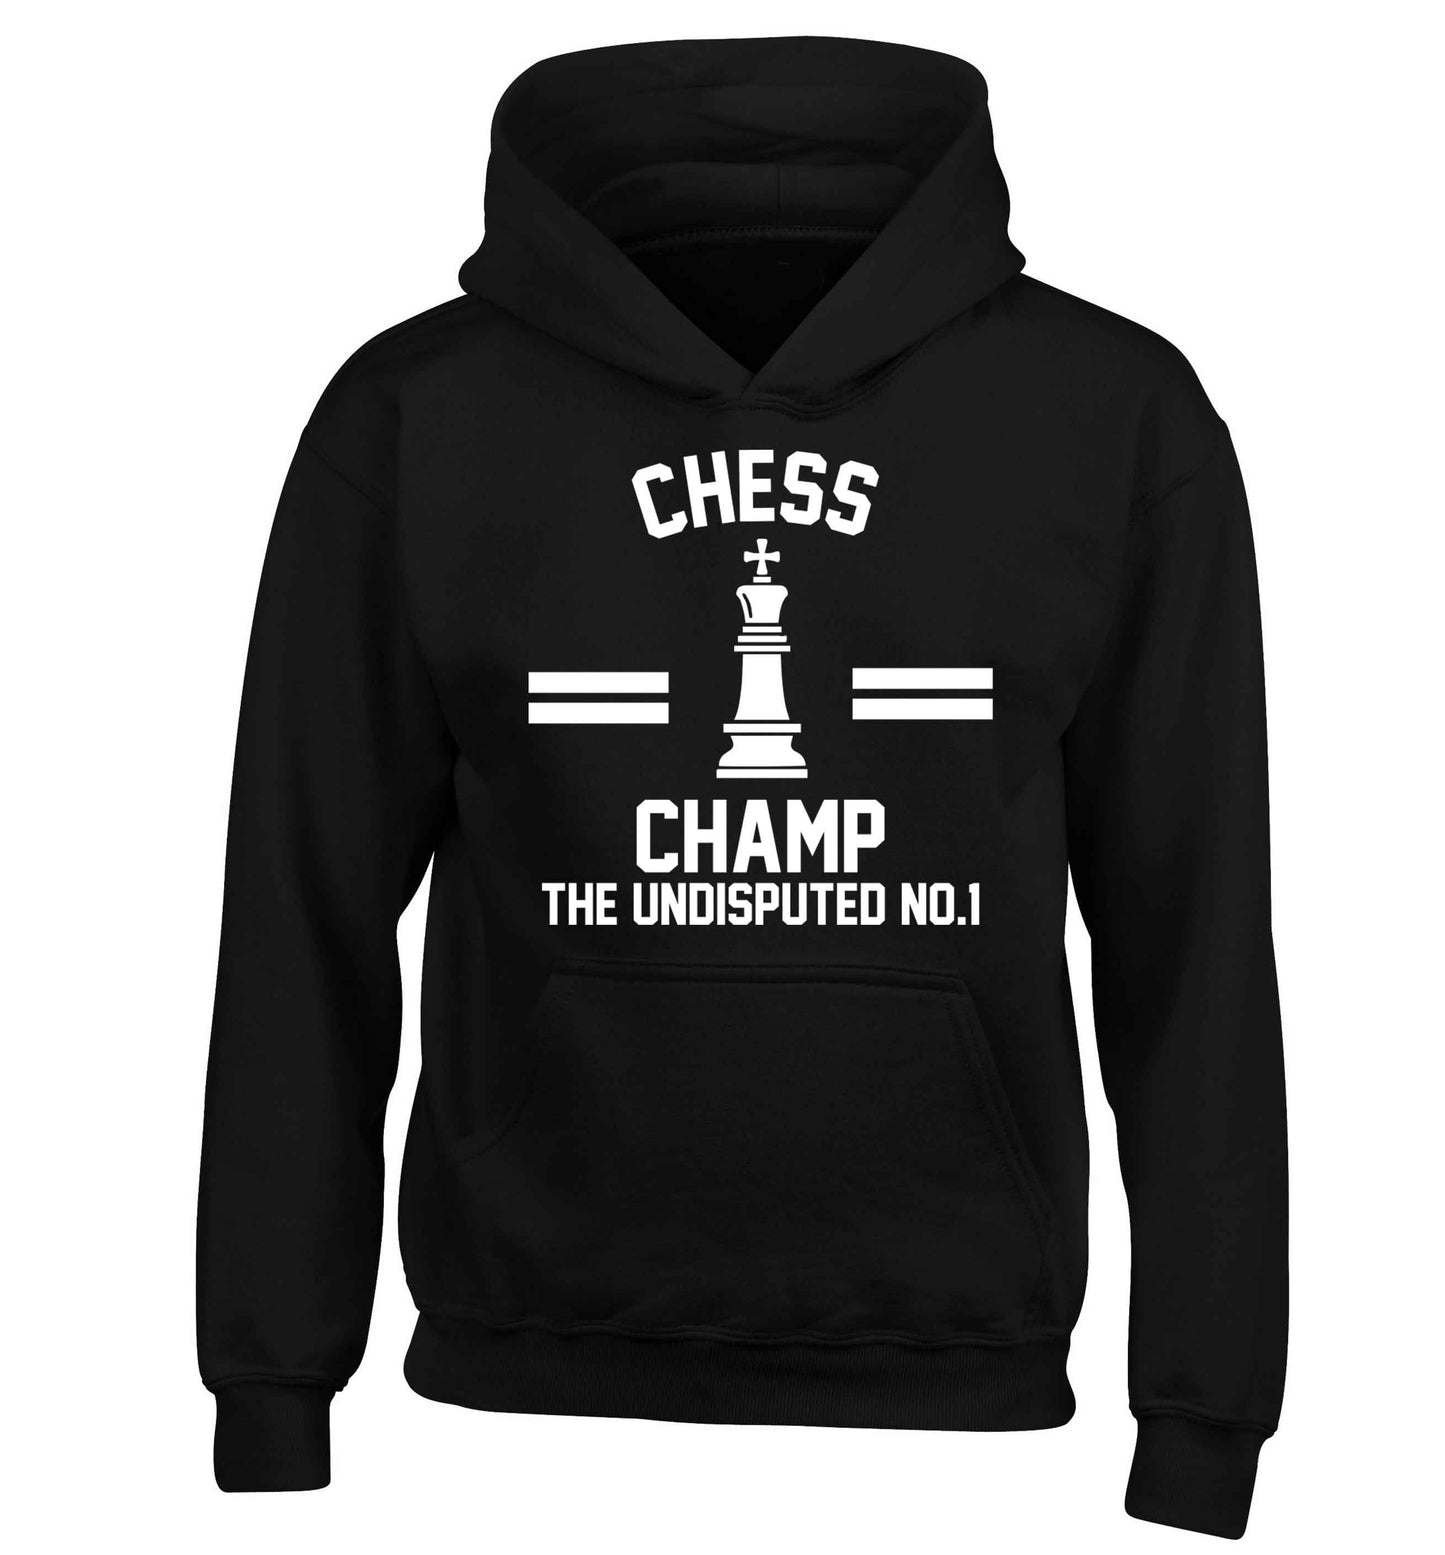 Undisputed chess championship no.1  children's black hoodie 12-13 Years